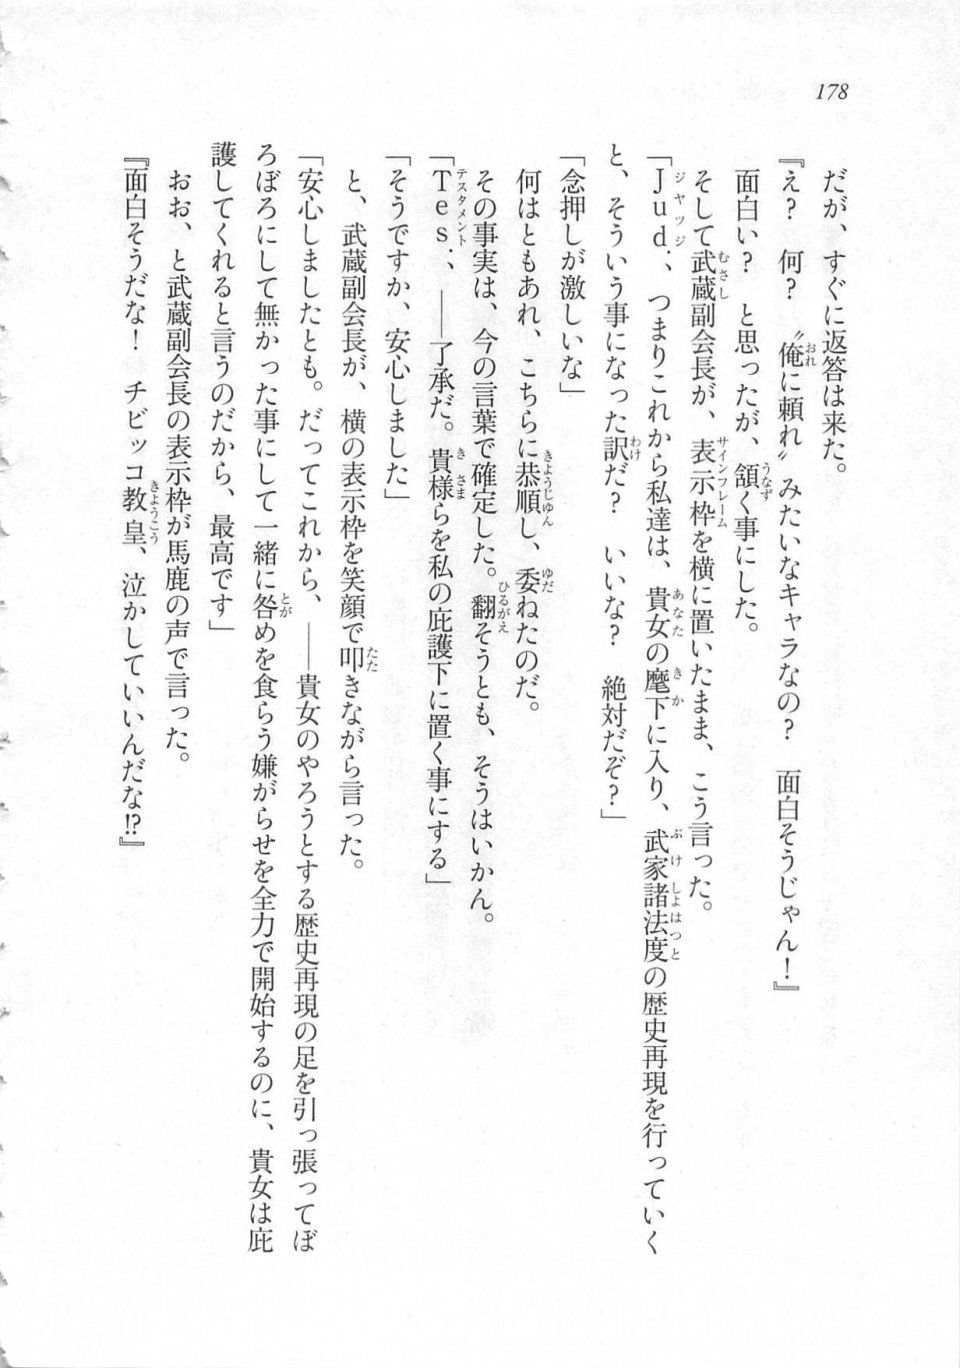 Kyoukai Senjou no Horizon LN Sidestory Vol 3 - Photo #182